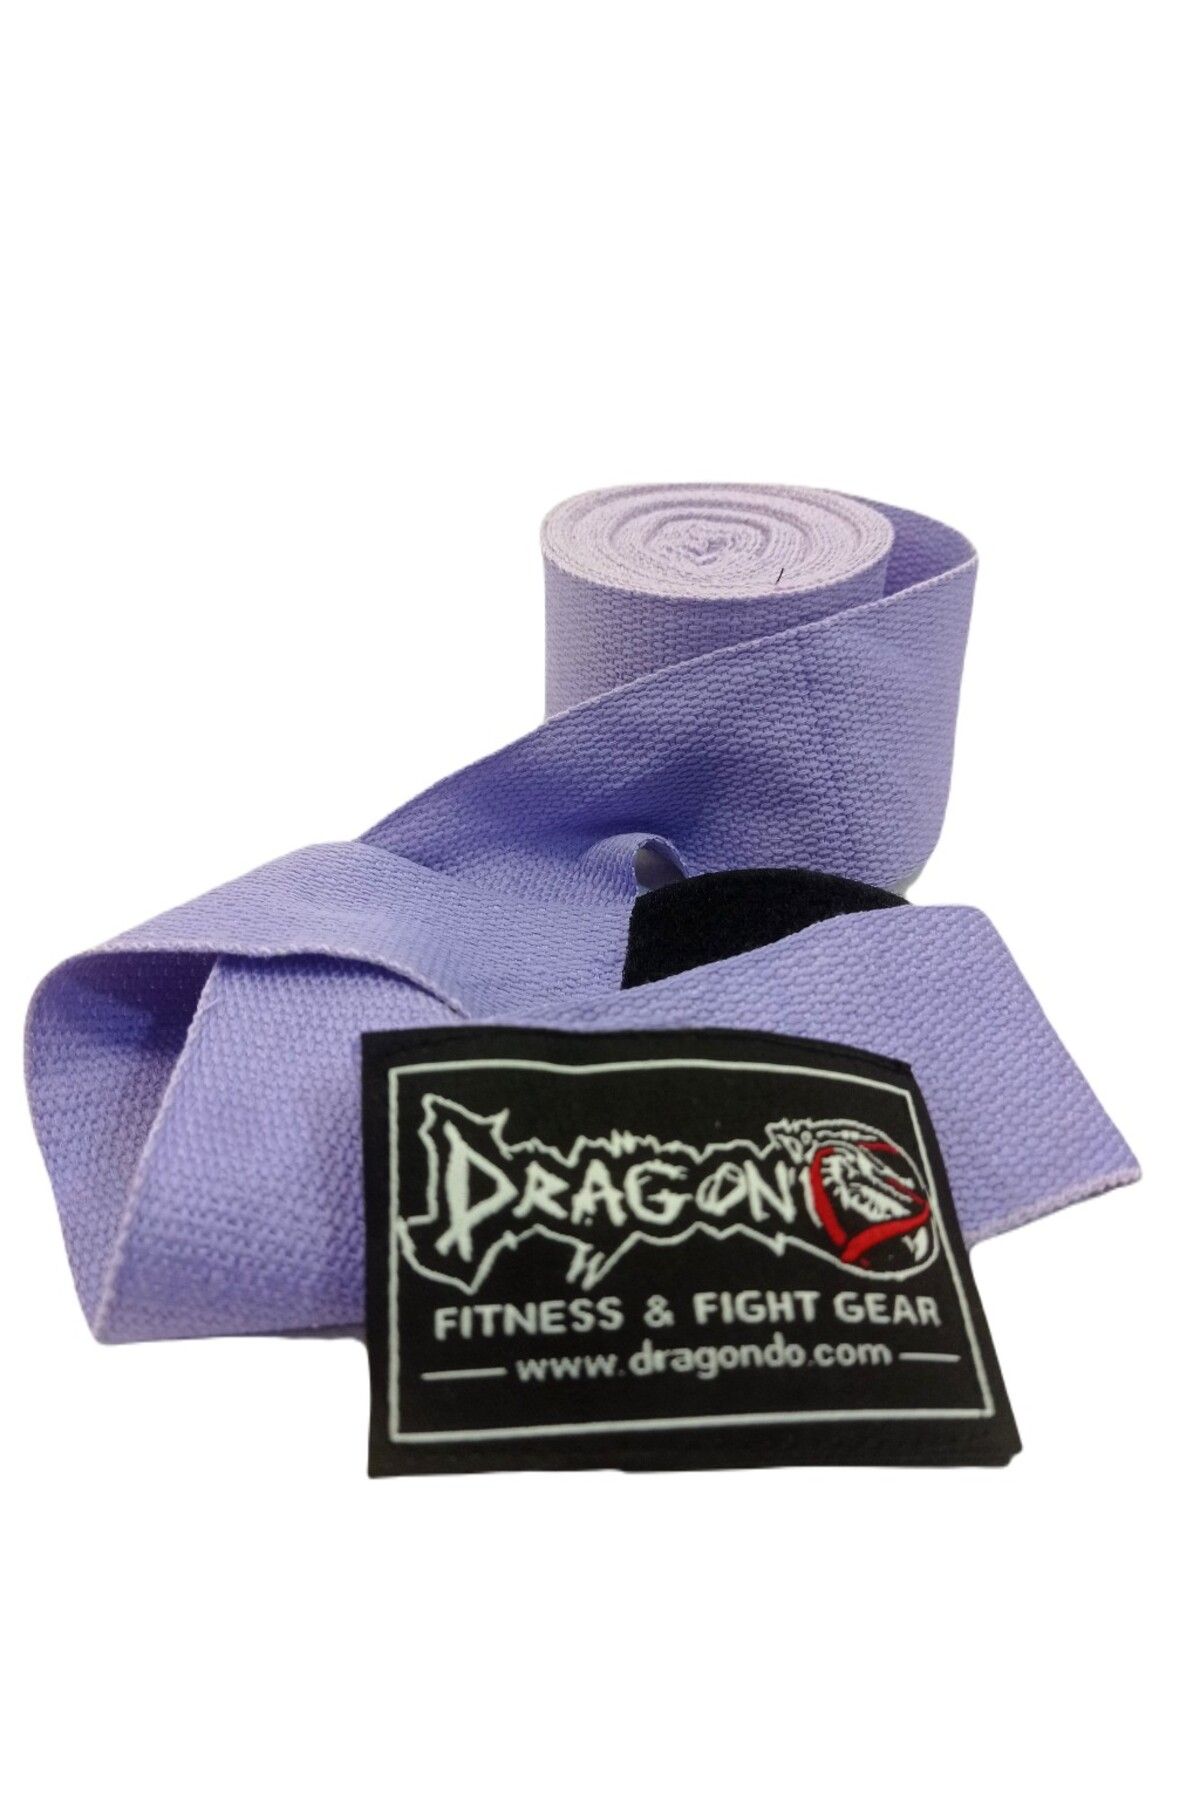 Dragondo 3,5 Metre Boks Bandajı Kick Boks Bandaj Renkli